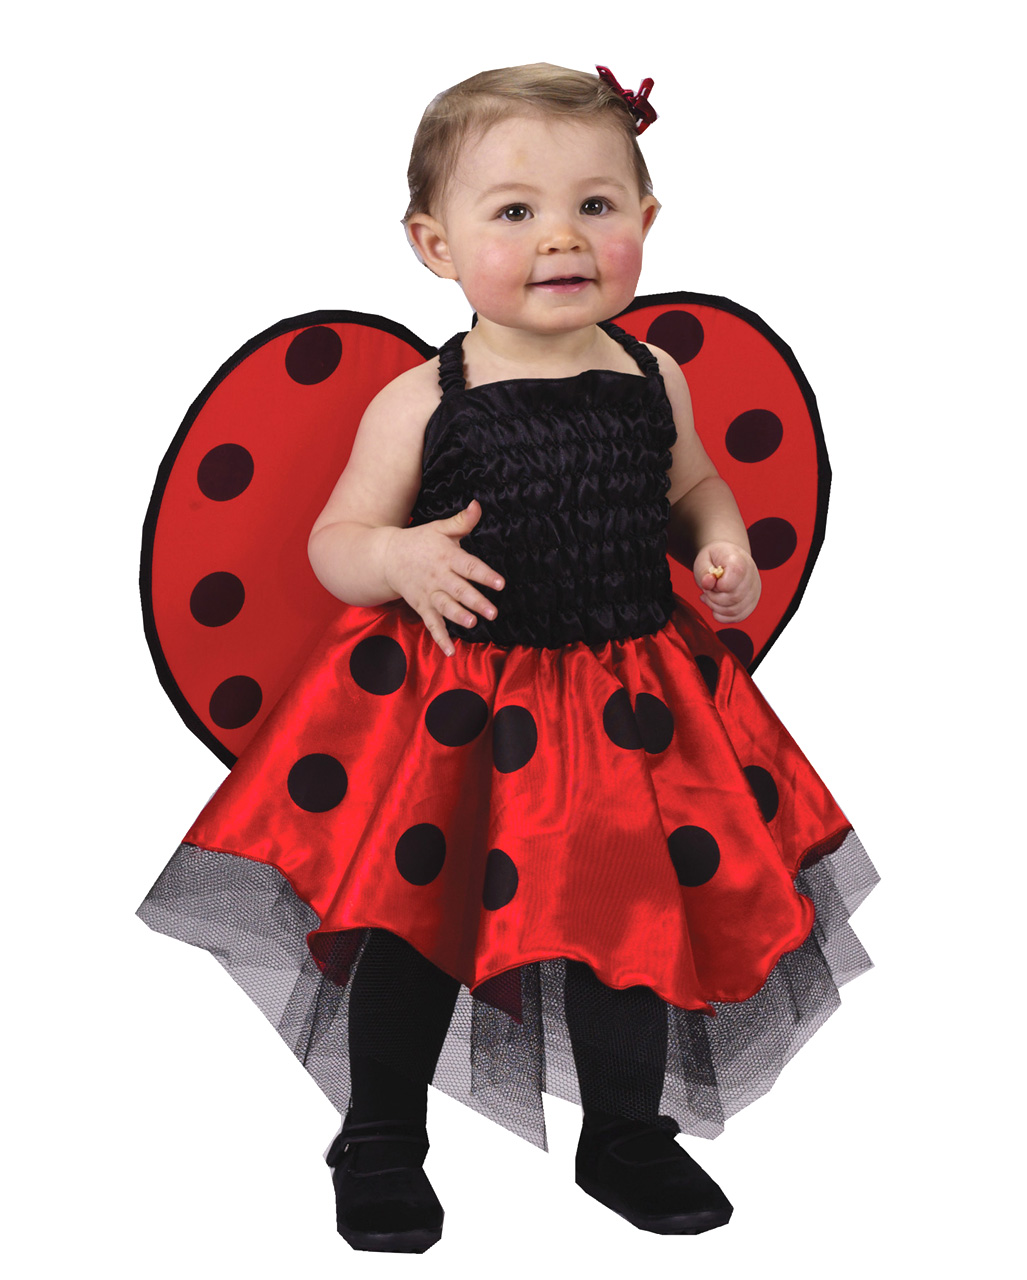 Baby Ladybug Costume, Ladybug Baby Costume, animal Costume